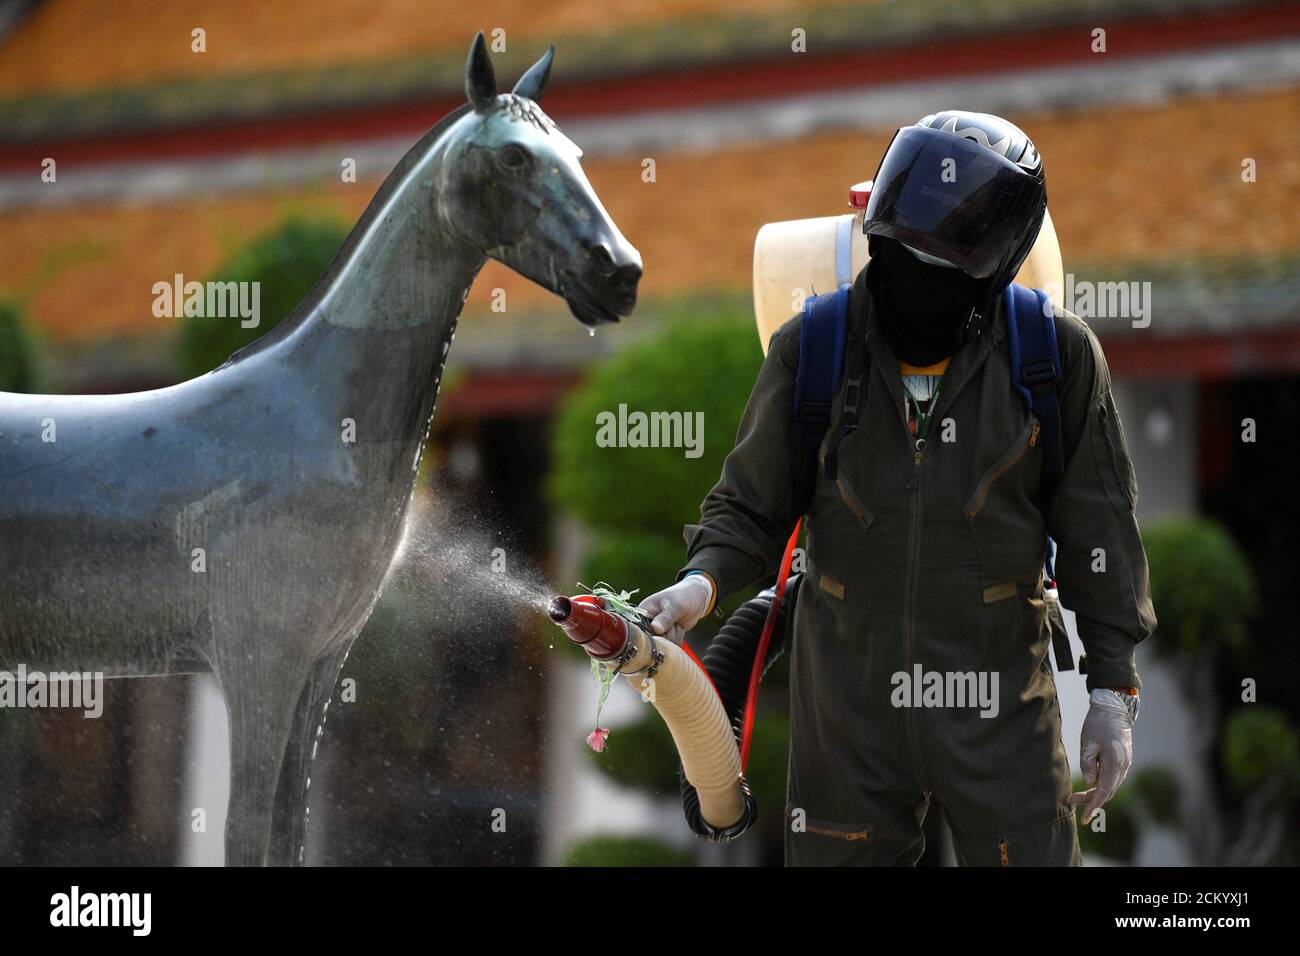 Un operatore sanitario spruzzi disinfettante a causa dell'epidemia di coronavirus all'interno del tempio di Wat Suthat Thepwararam a Bangkok, Thailandia 17 marzo 2020. REUTERS/Chalinee Thirasupa Foto Stock